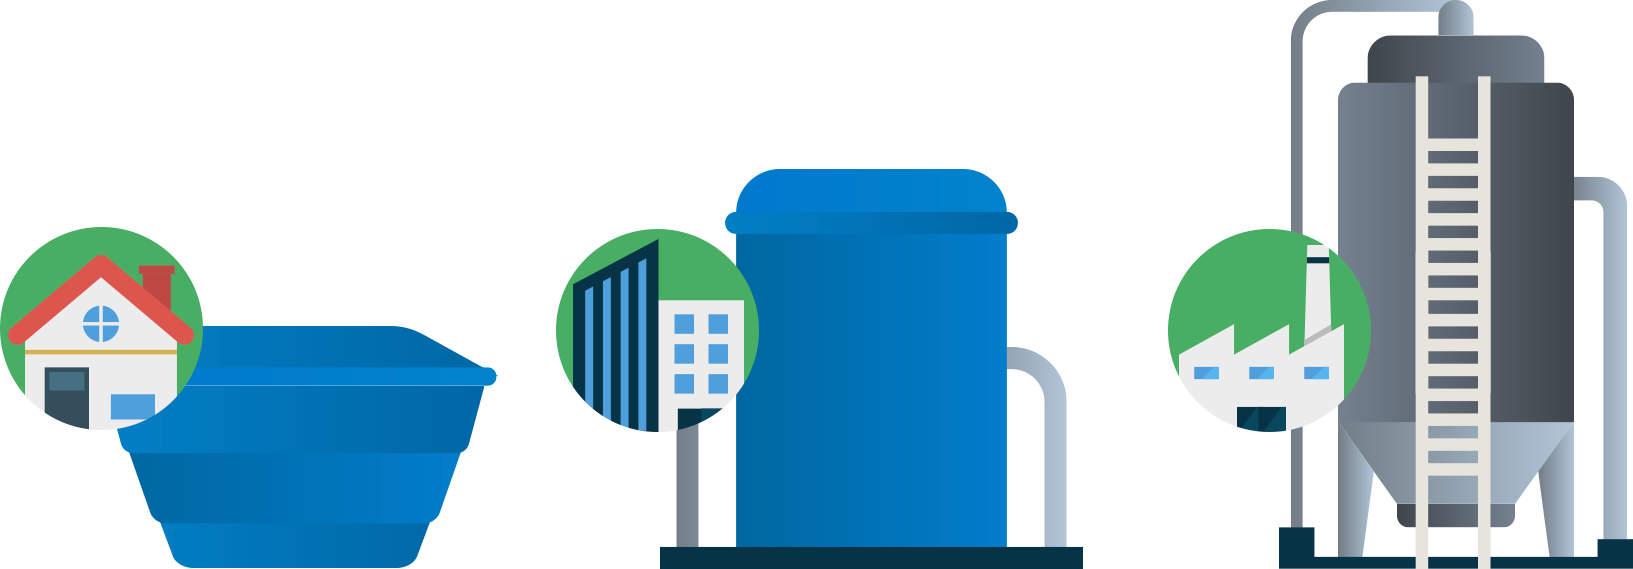 Ilustração de caixa d’água pequena para residências, média para prédios e grande para fábricas e indústrias